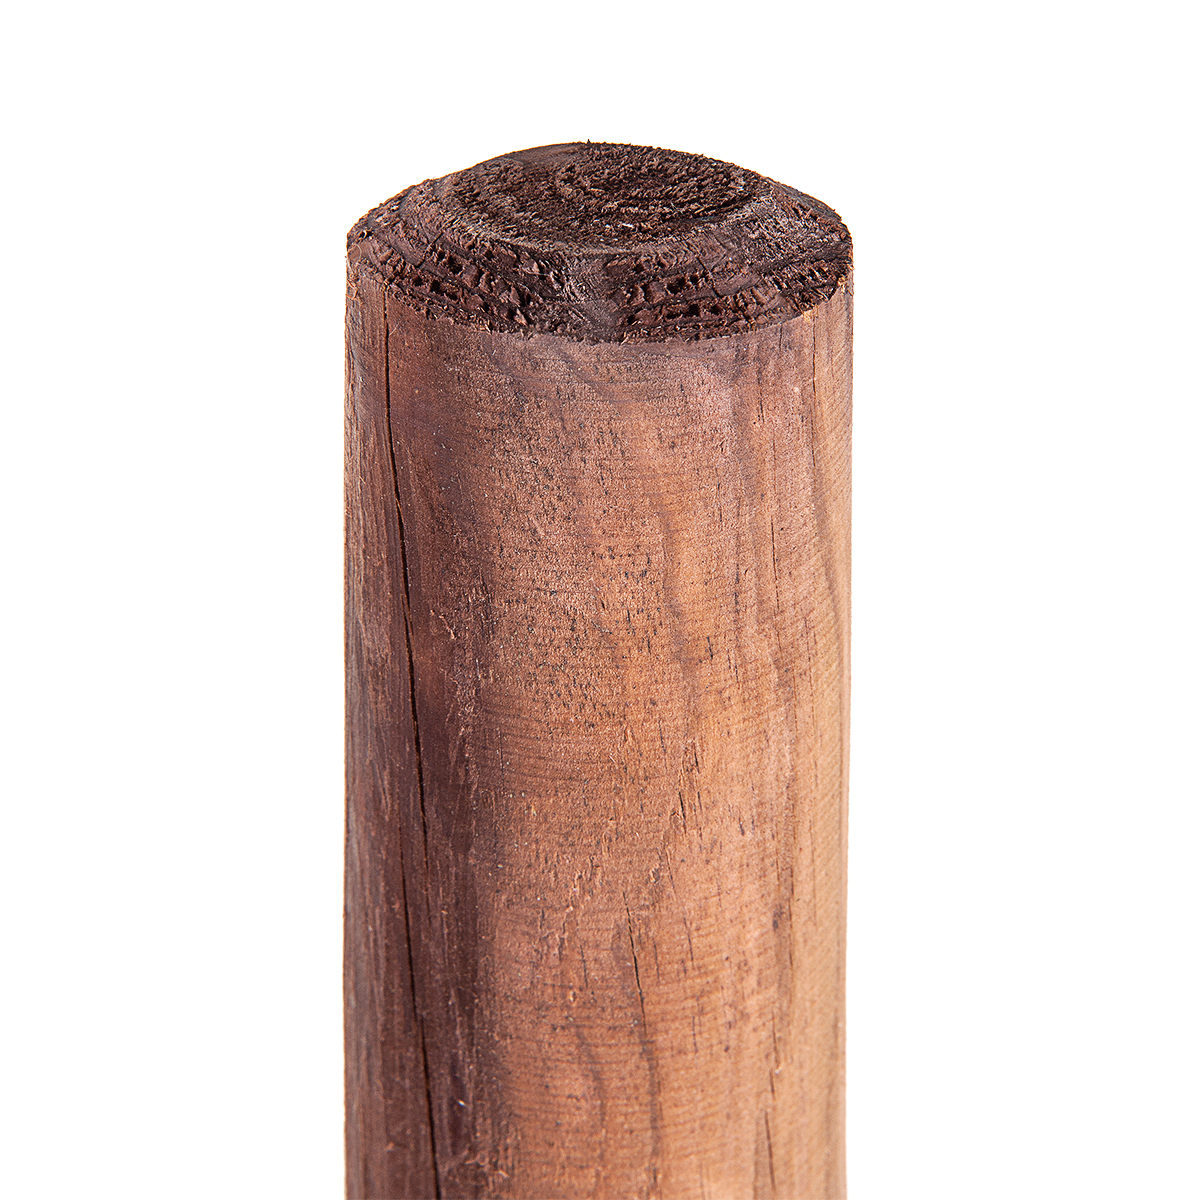 1 pz. Palina di legno 8cmØ x 75cm di altezza Paletto di legno Paletto di legno per recinzione